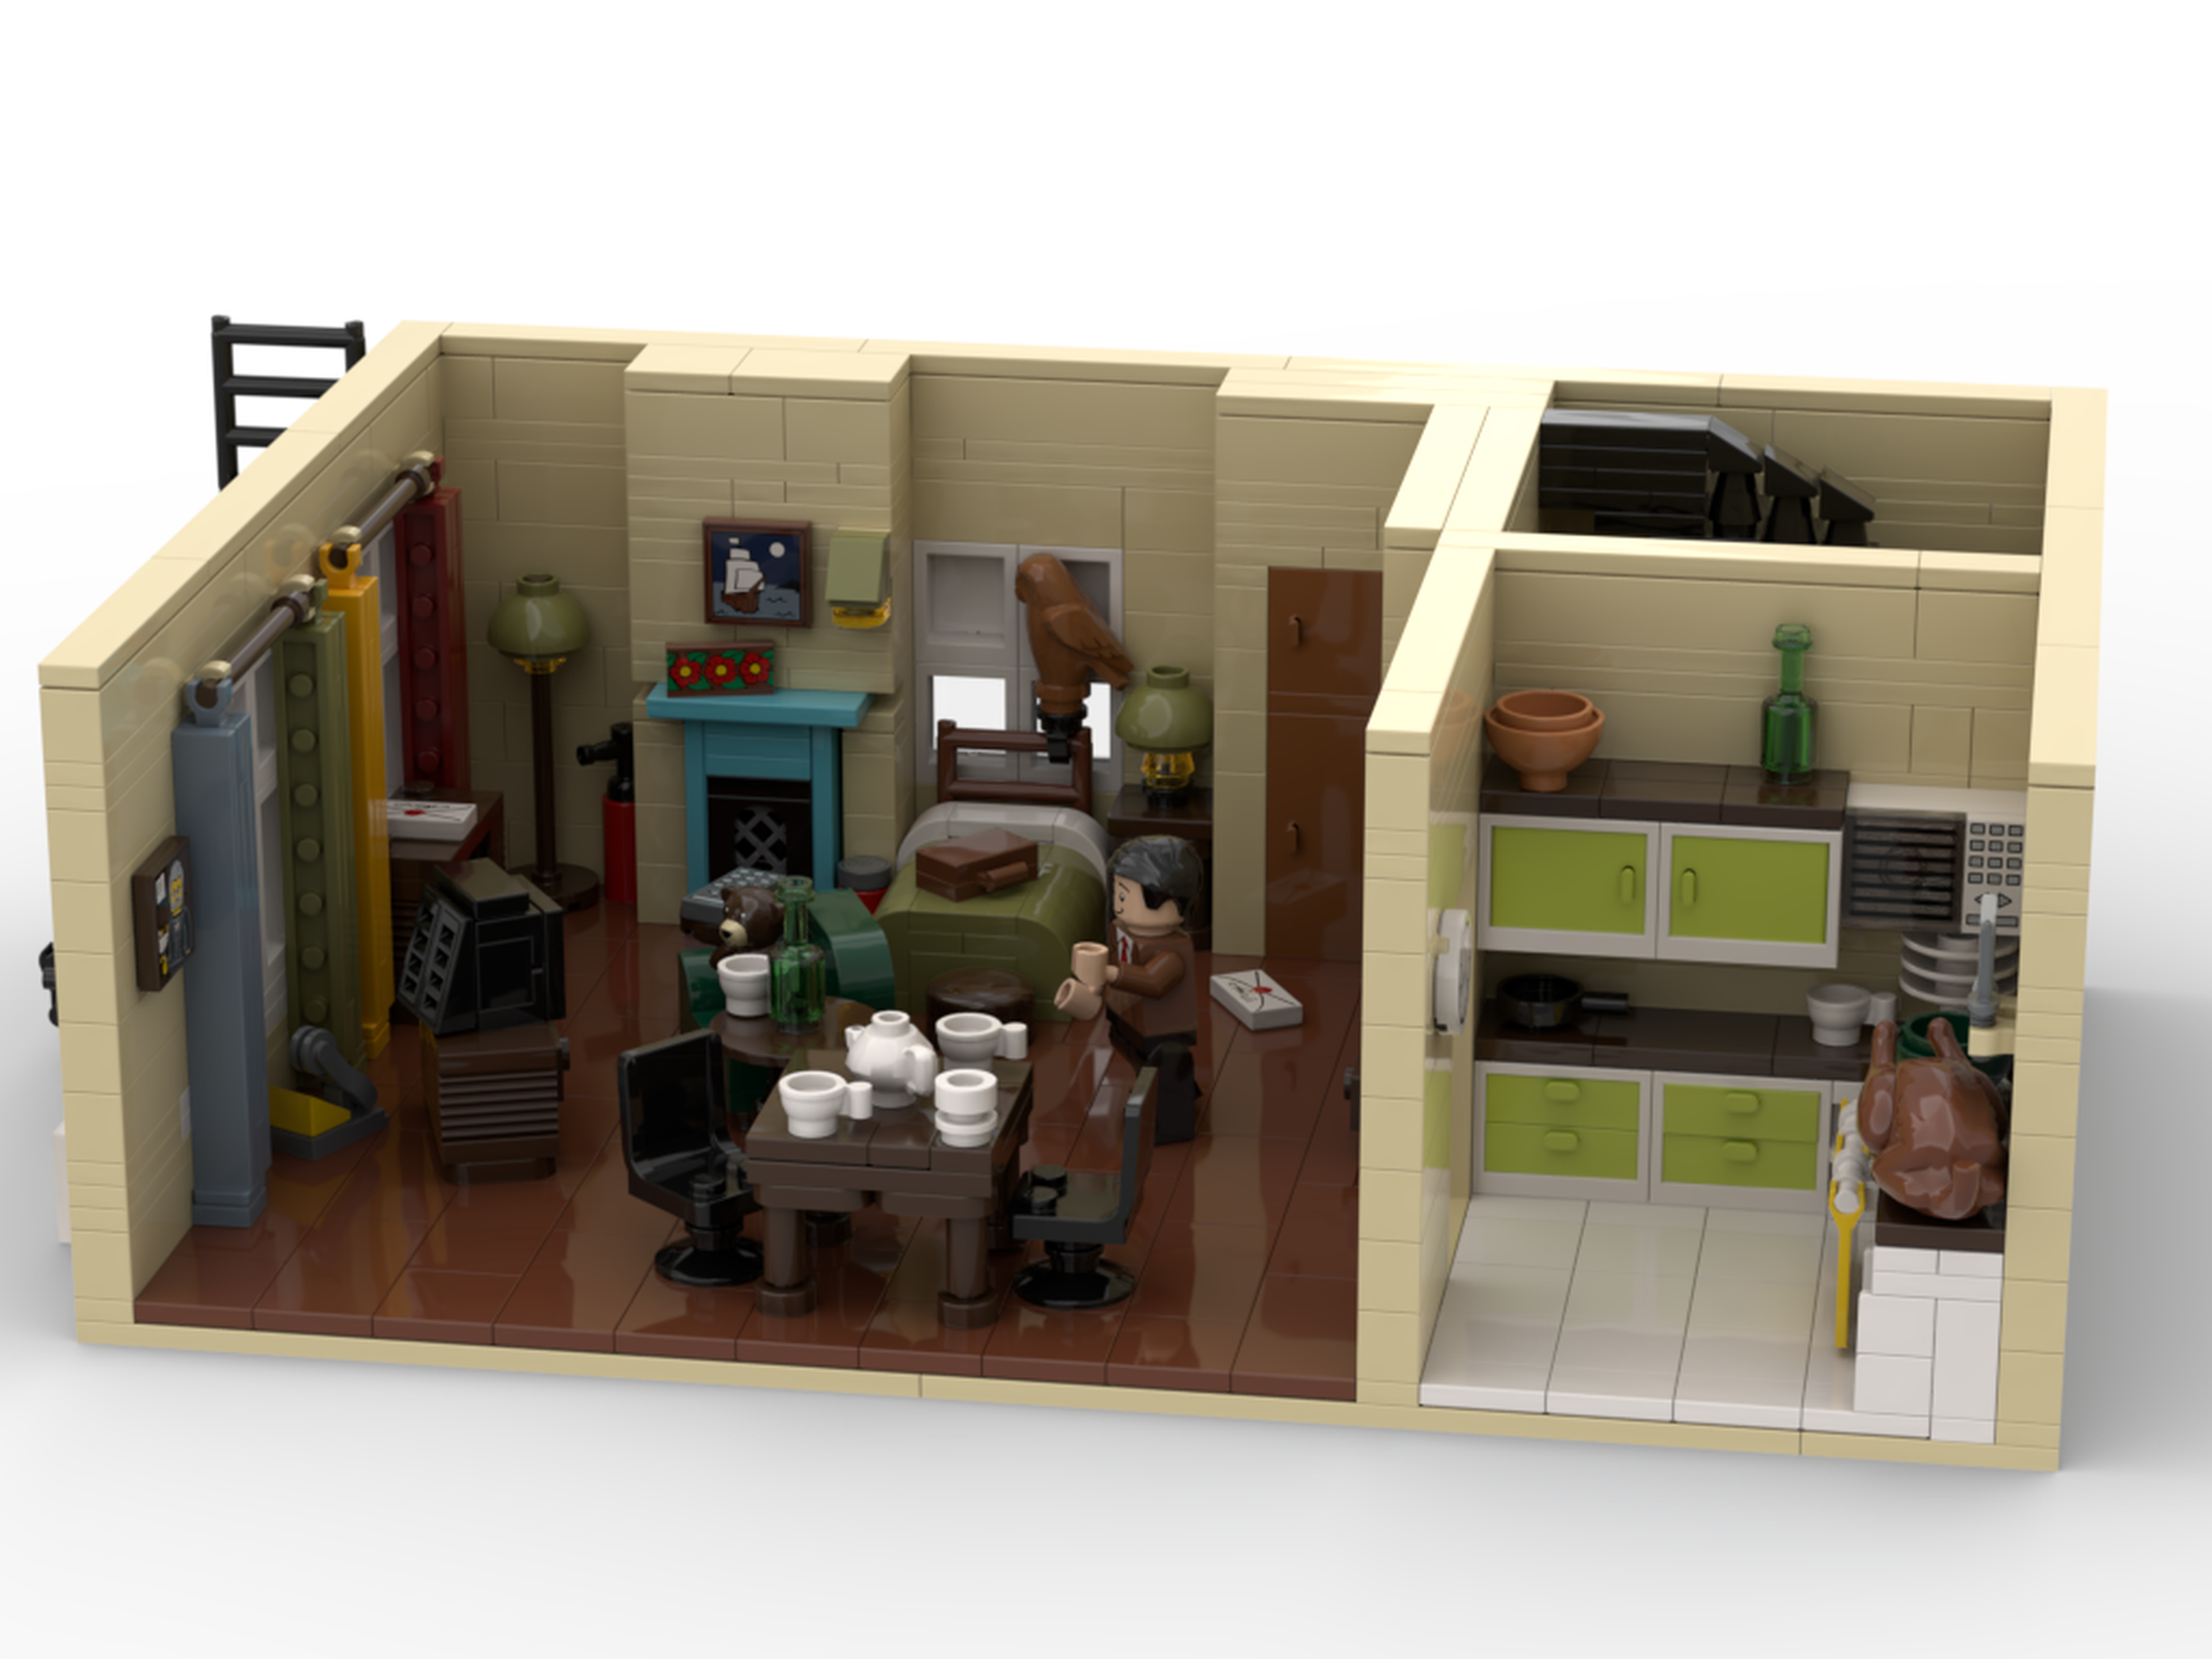 Apartamento de Mr Bean LEGO